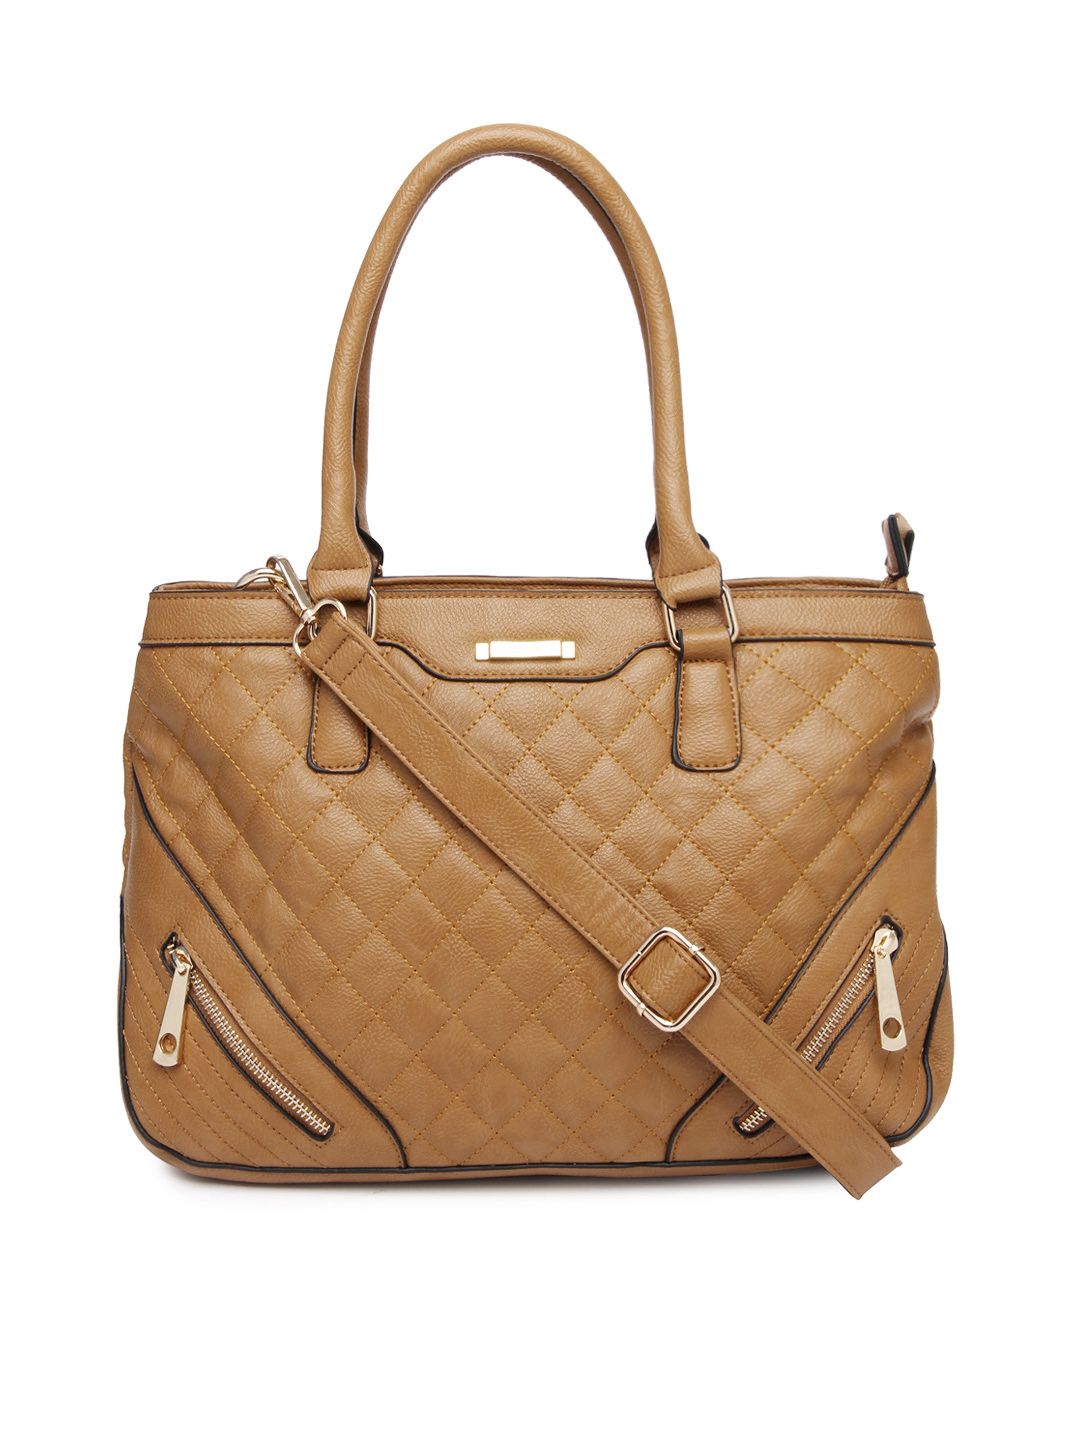 Buy David Jones Brown Shoulder Bag - 598 - Accessories for Women - 477611